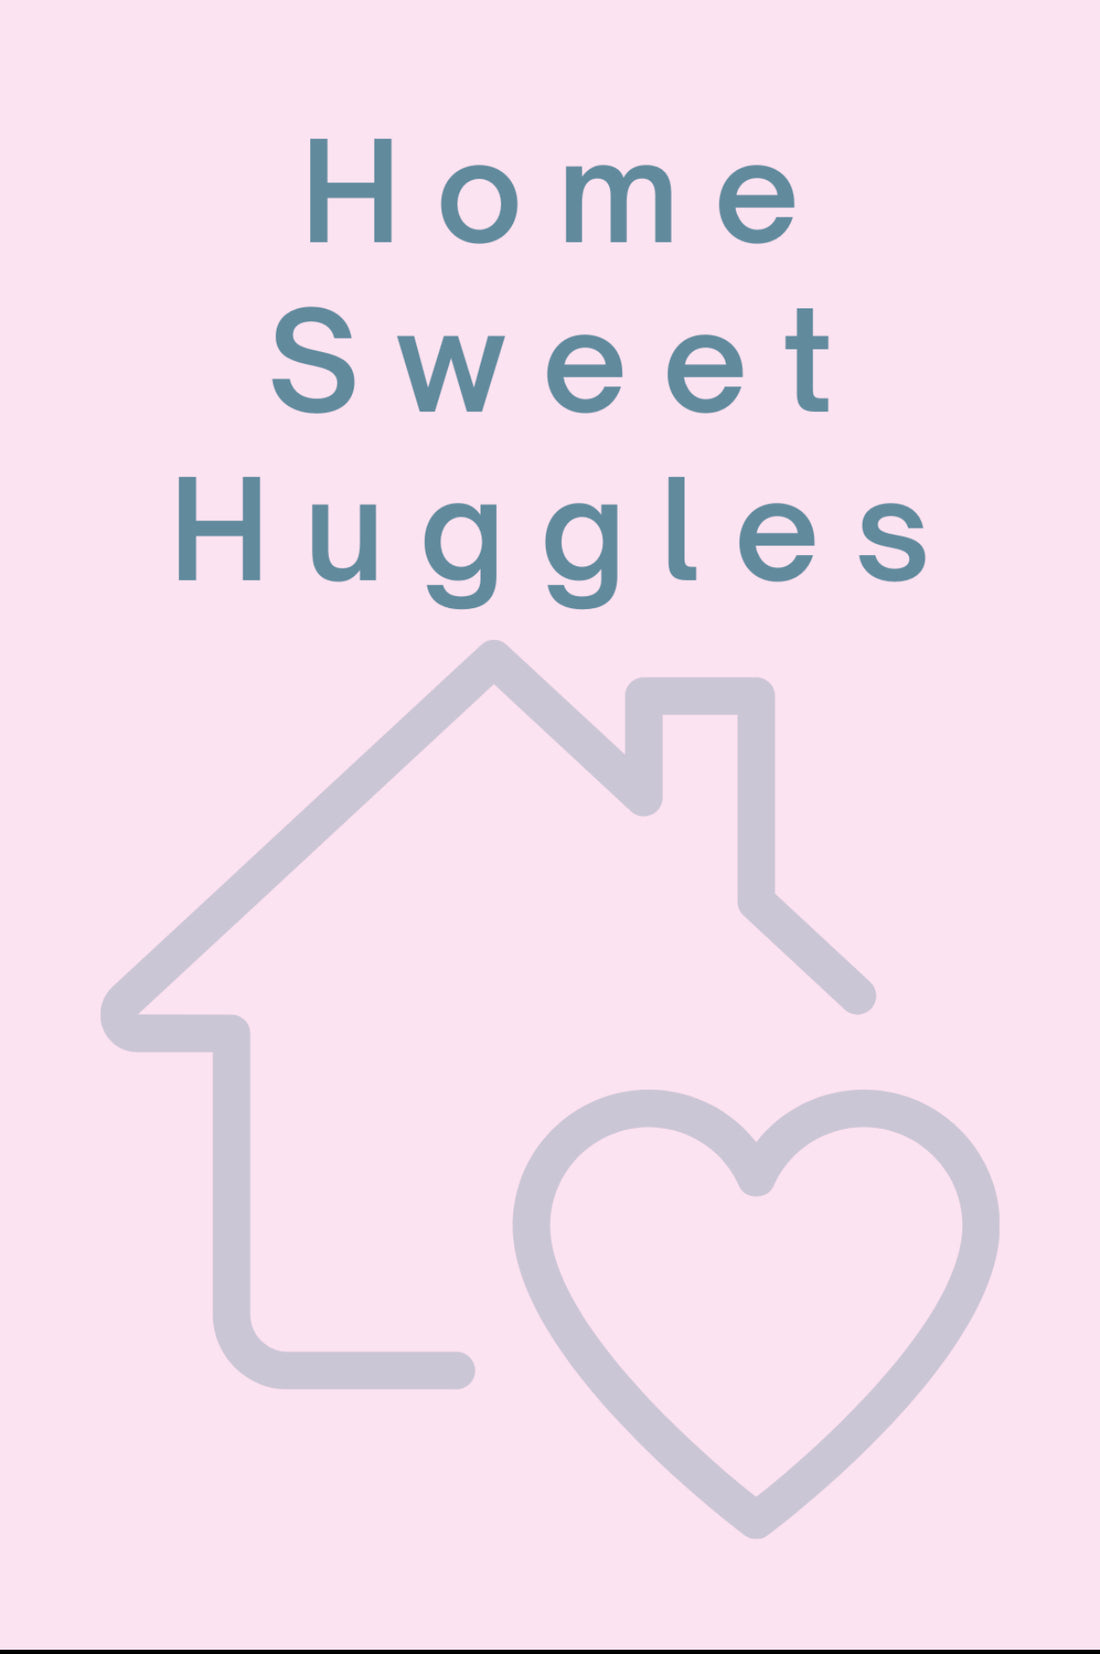 Home Sweet Huggles - Home of Huggles